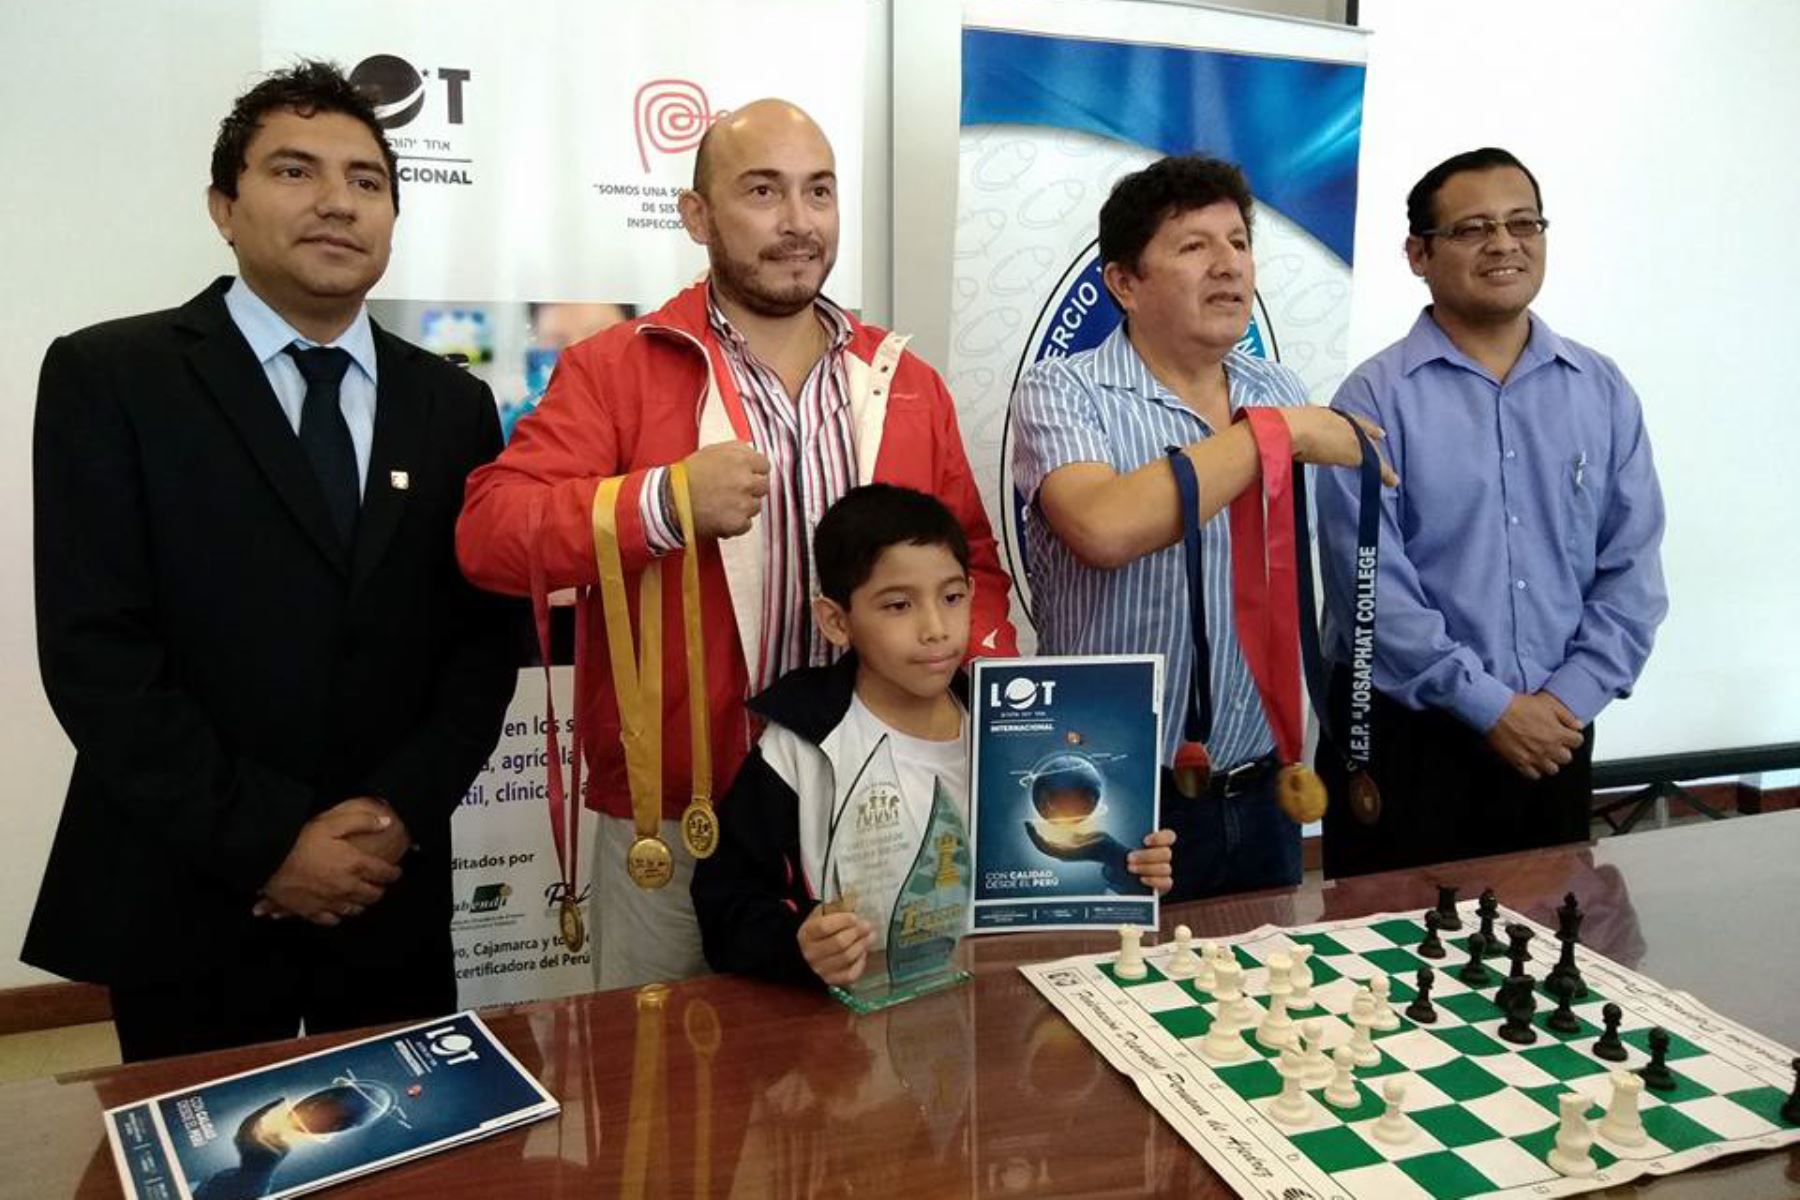 Niño ajedrecista de 7 años representará a Perú en Panamericano de Ajedrez en Chile. Foto: ANDINA.